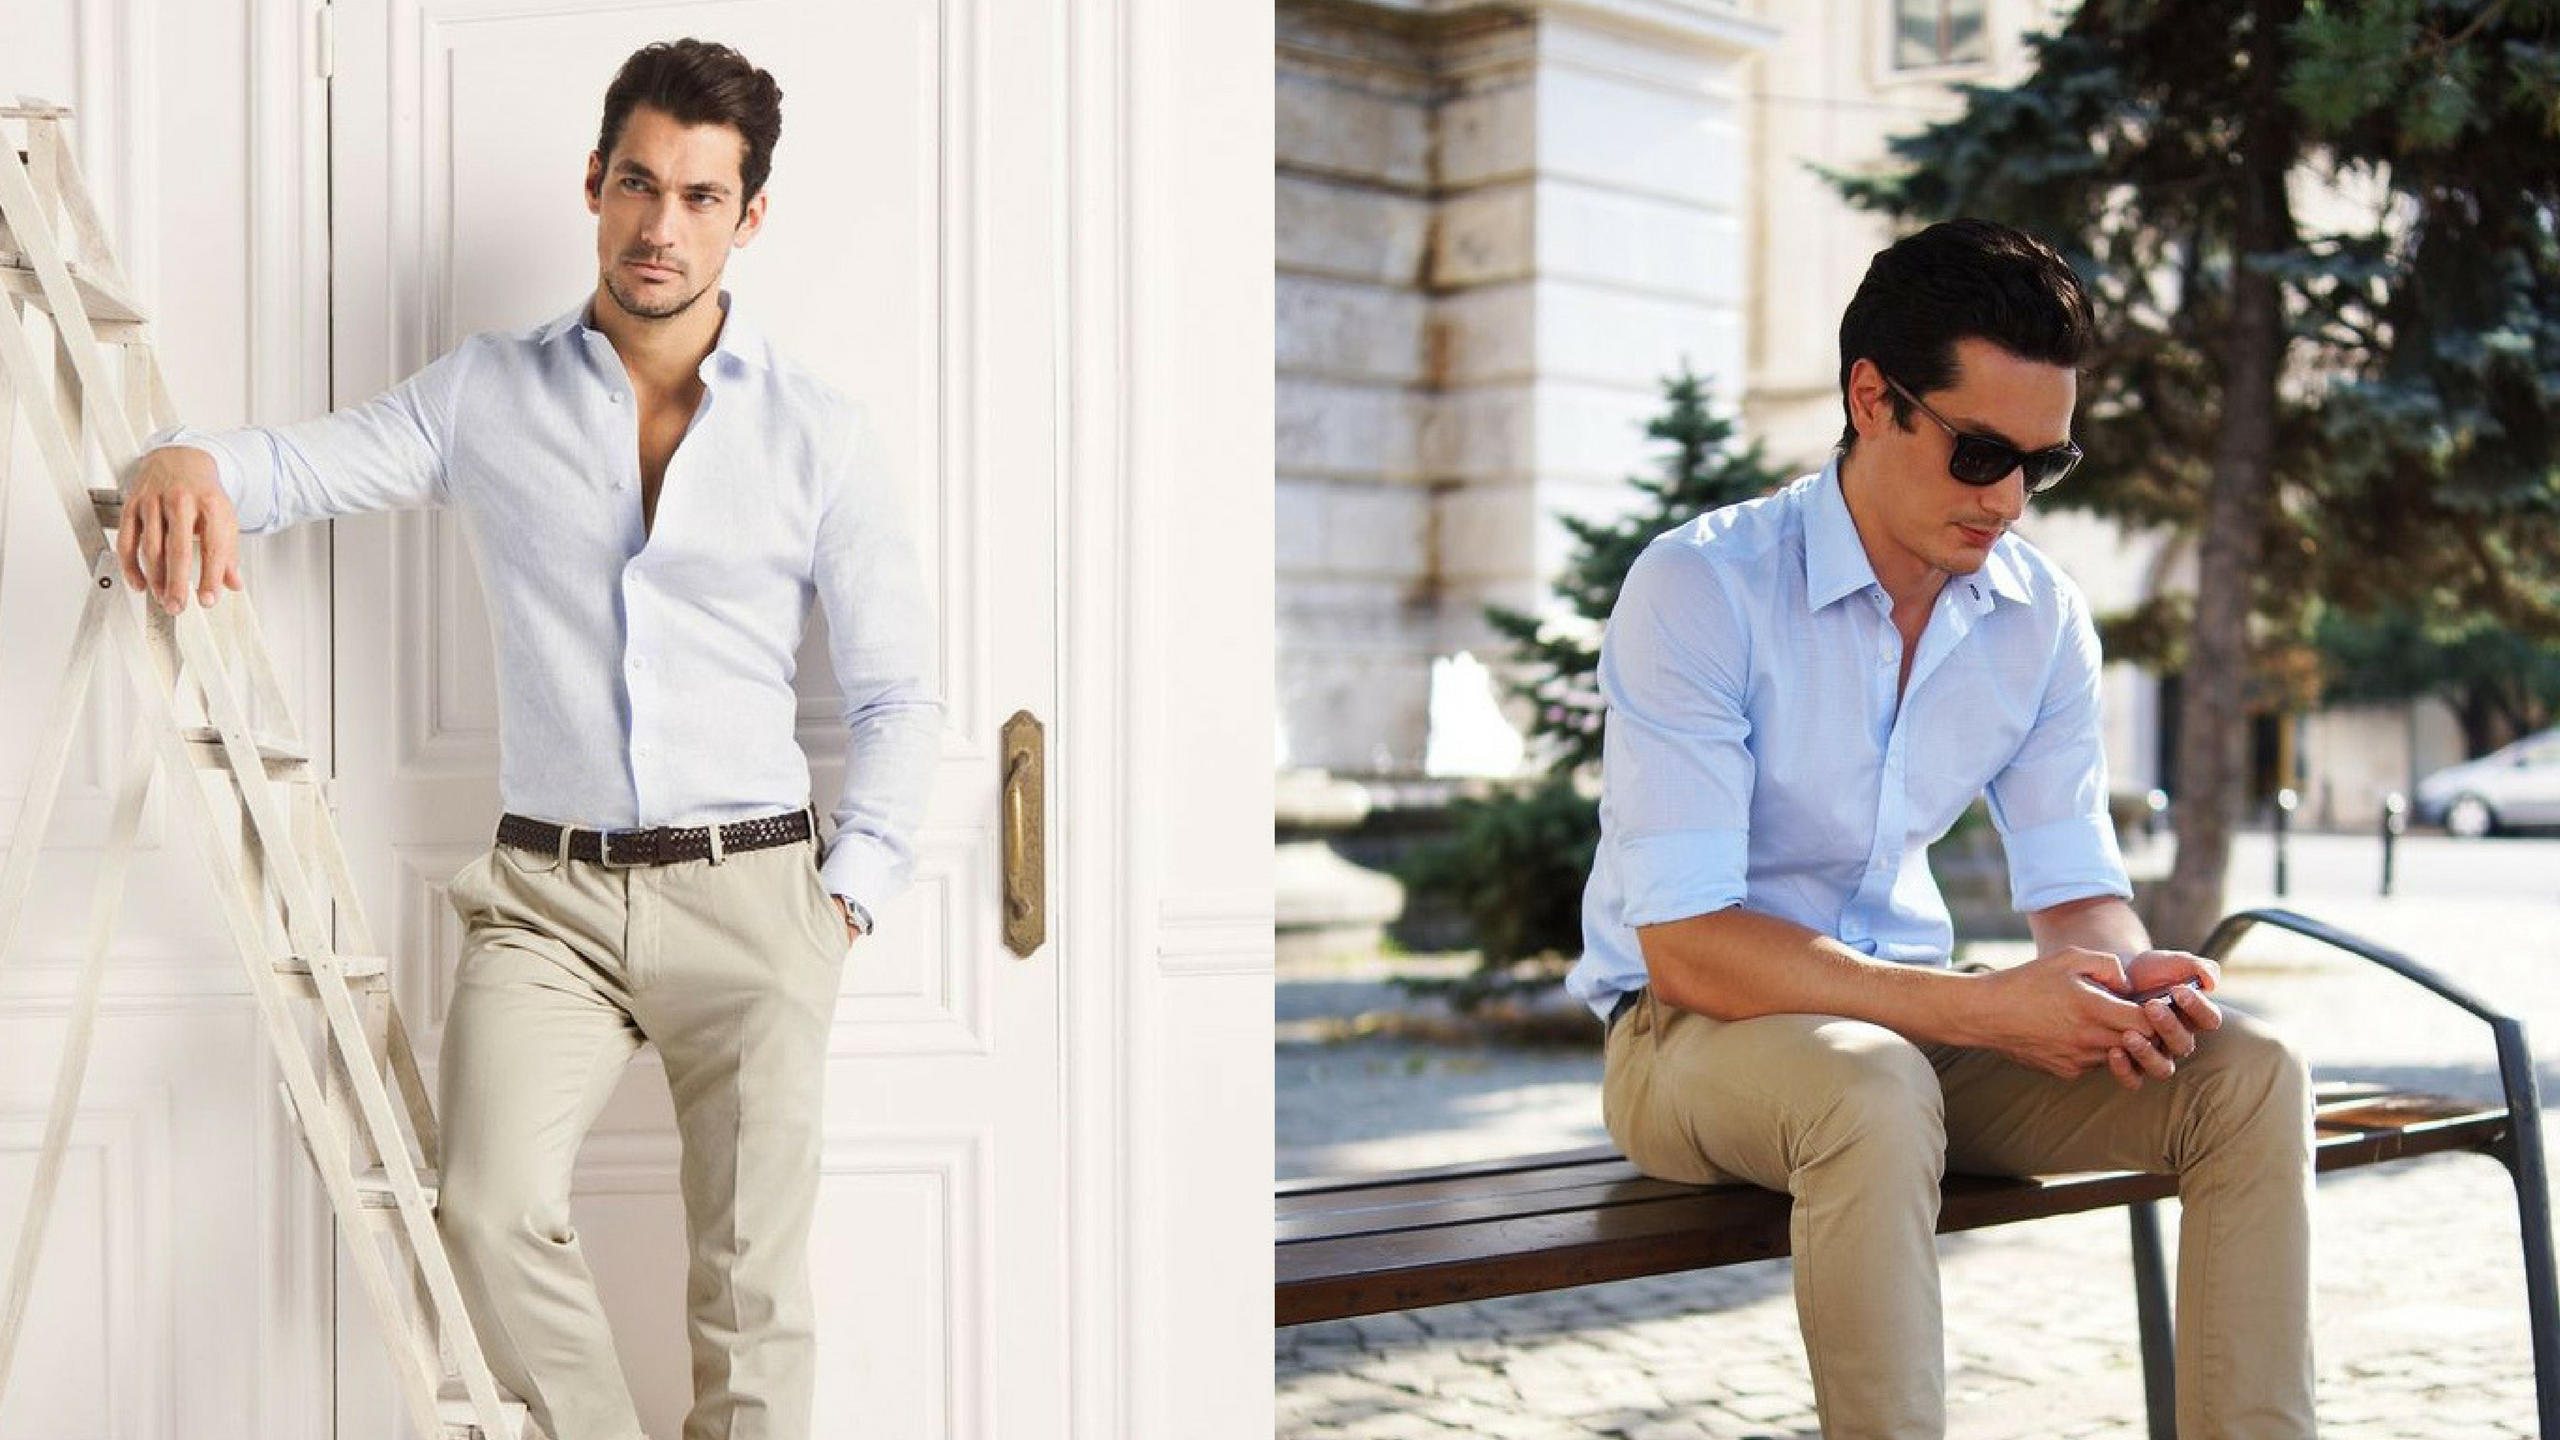 4 части мужчины. Офисный стиль мужской. Летний деловой образ мужчины. Летняя одежда для мужчин. Офисная одежда для мужчин летом.